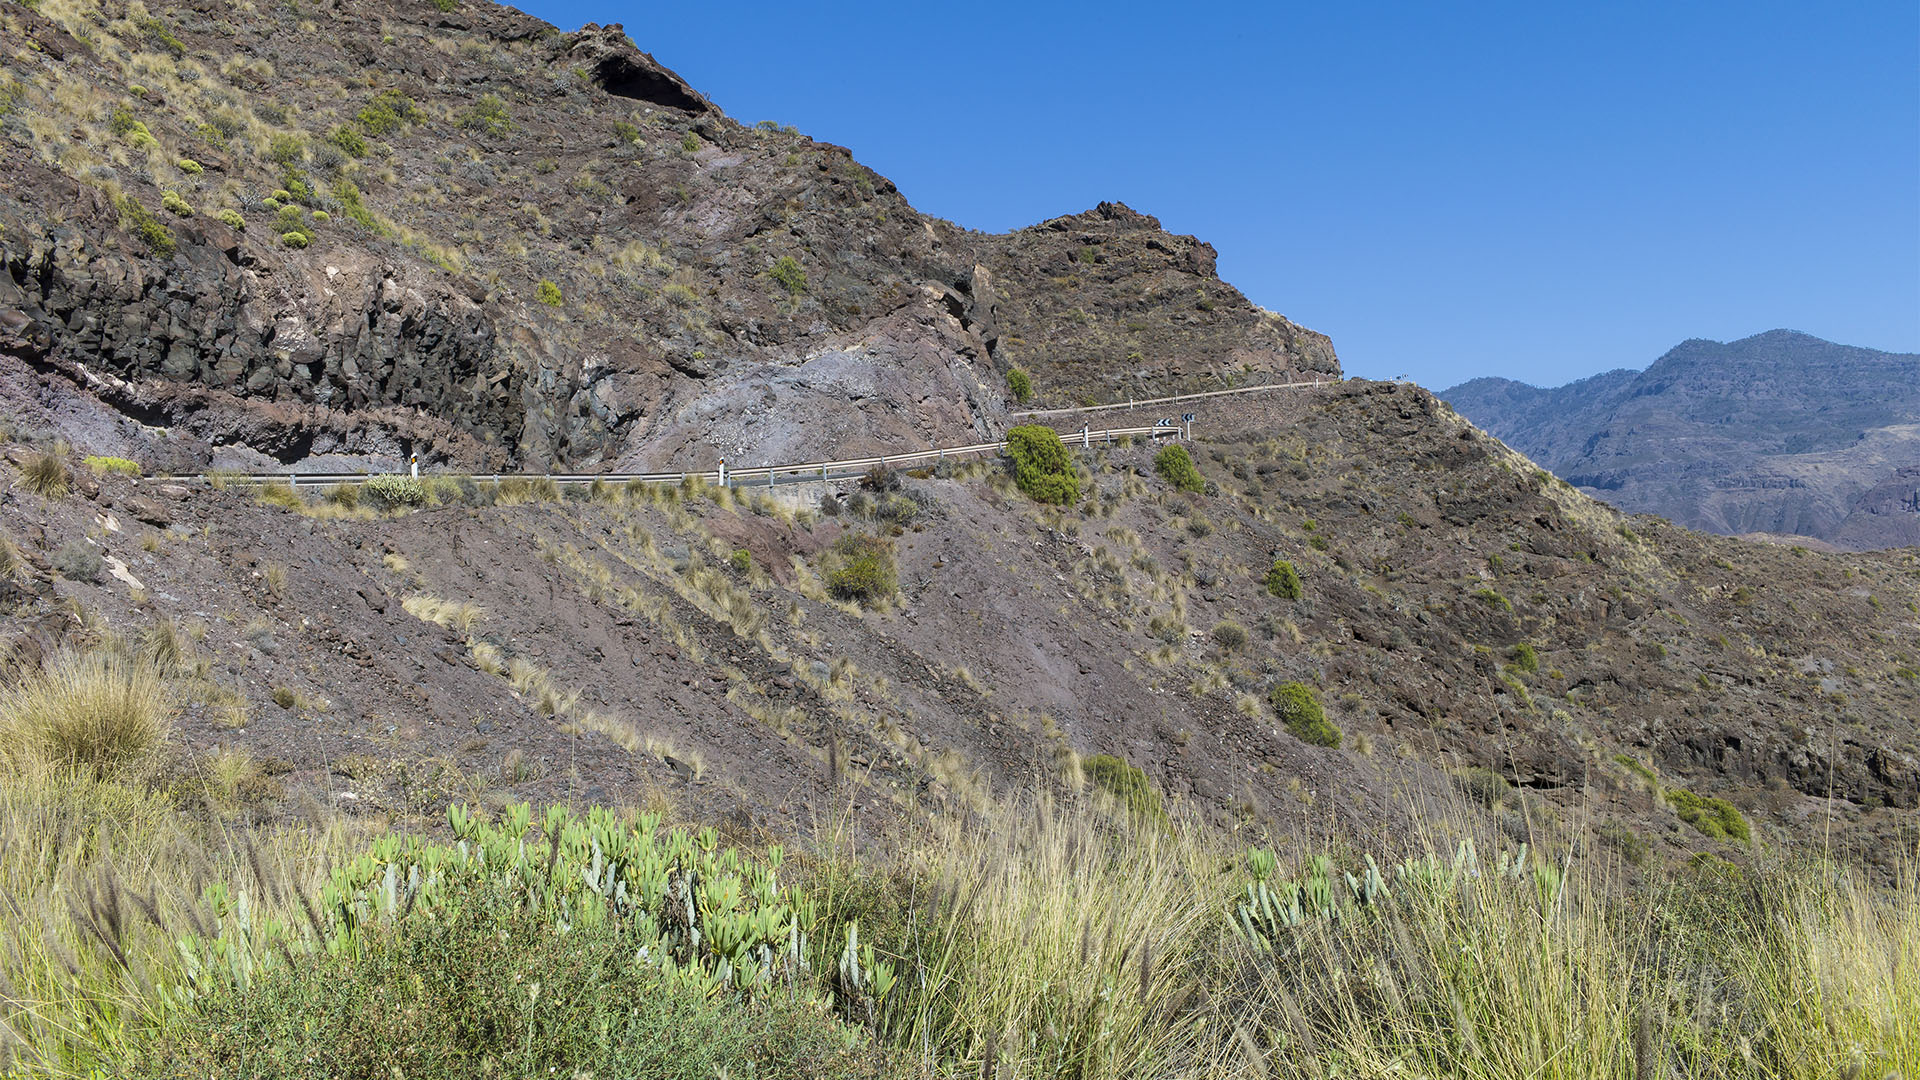 Der mittlerweile gesperrte Streckenabschnitt der CG-200, die Andén Verde. Schon bei der Trassierung der Strasse gab es hier durch die Erosion größte Probleme.